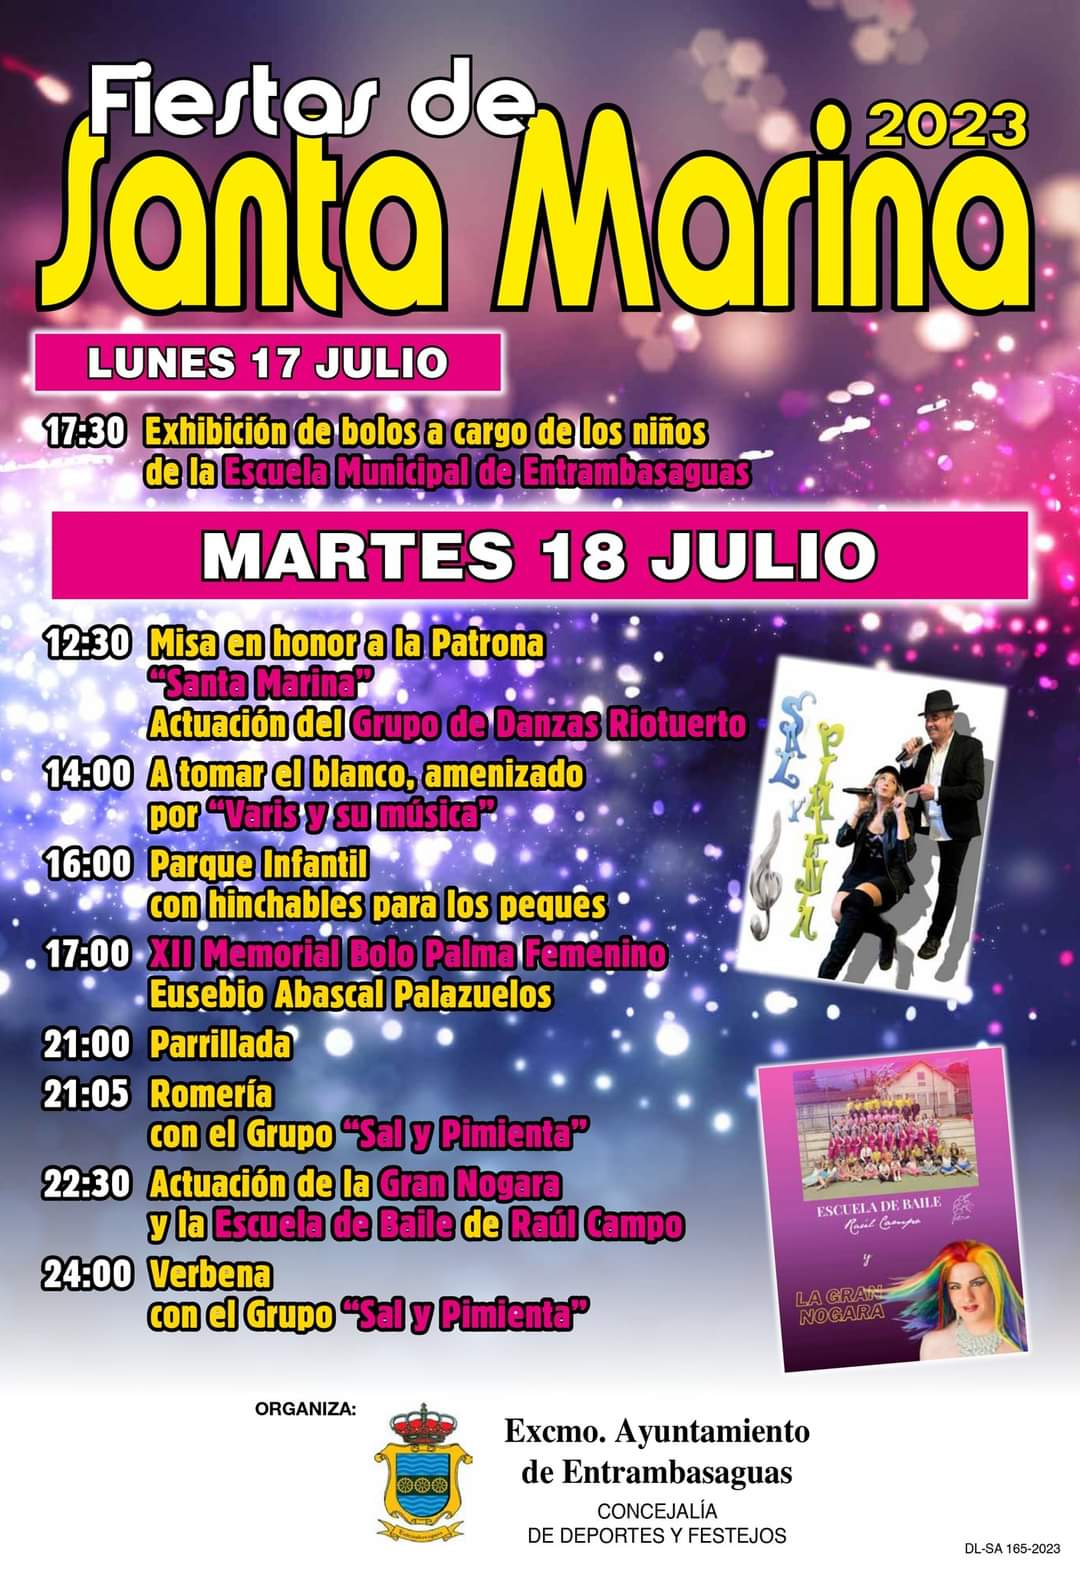 Fiestas de Santa Marina 2023